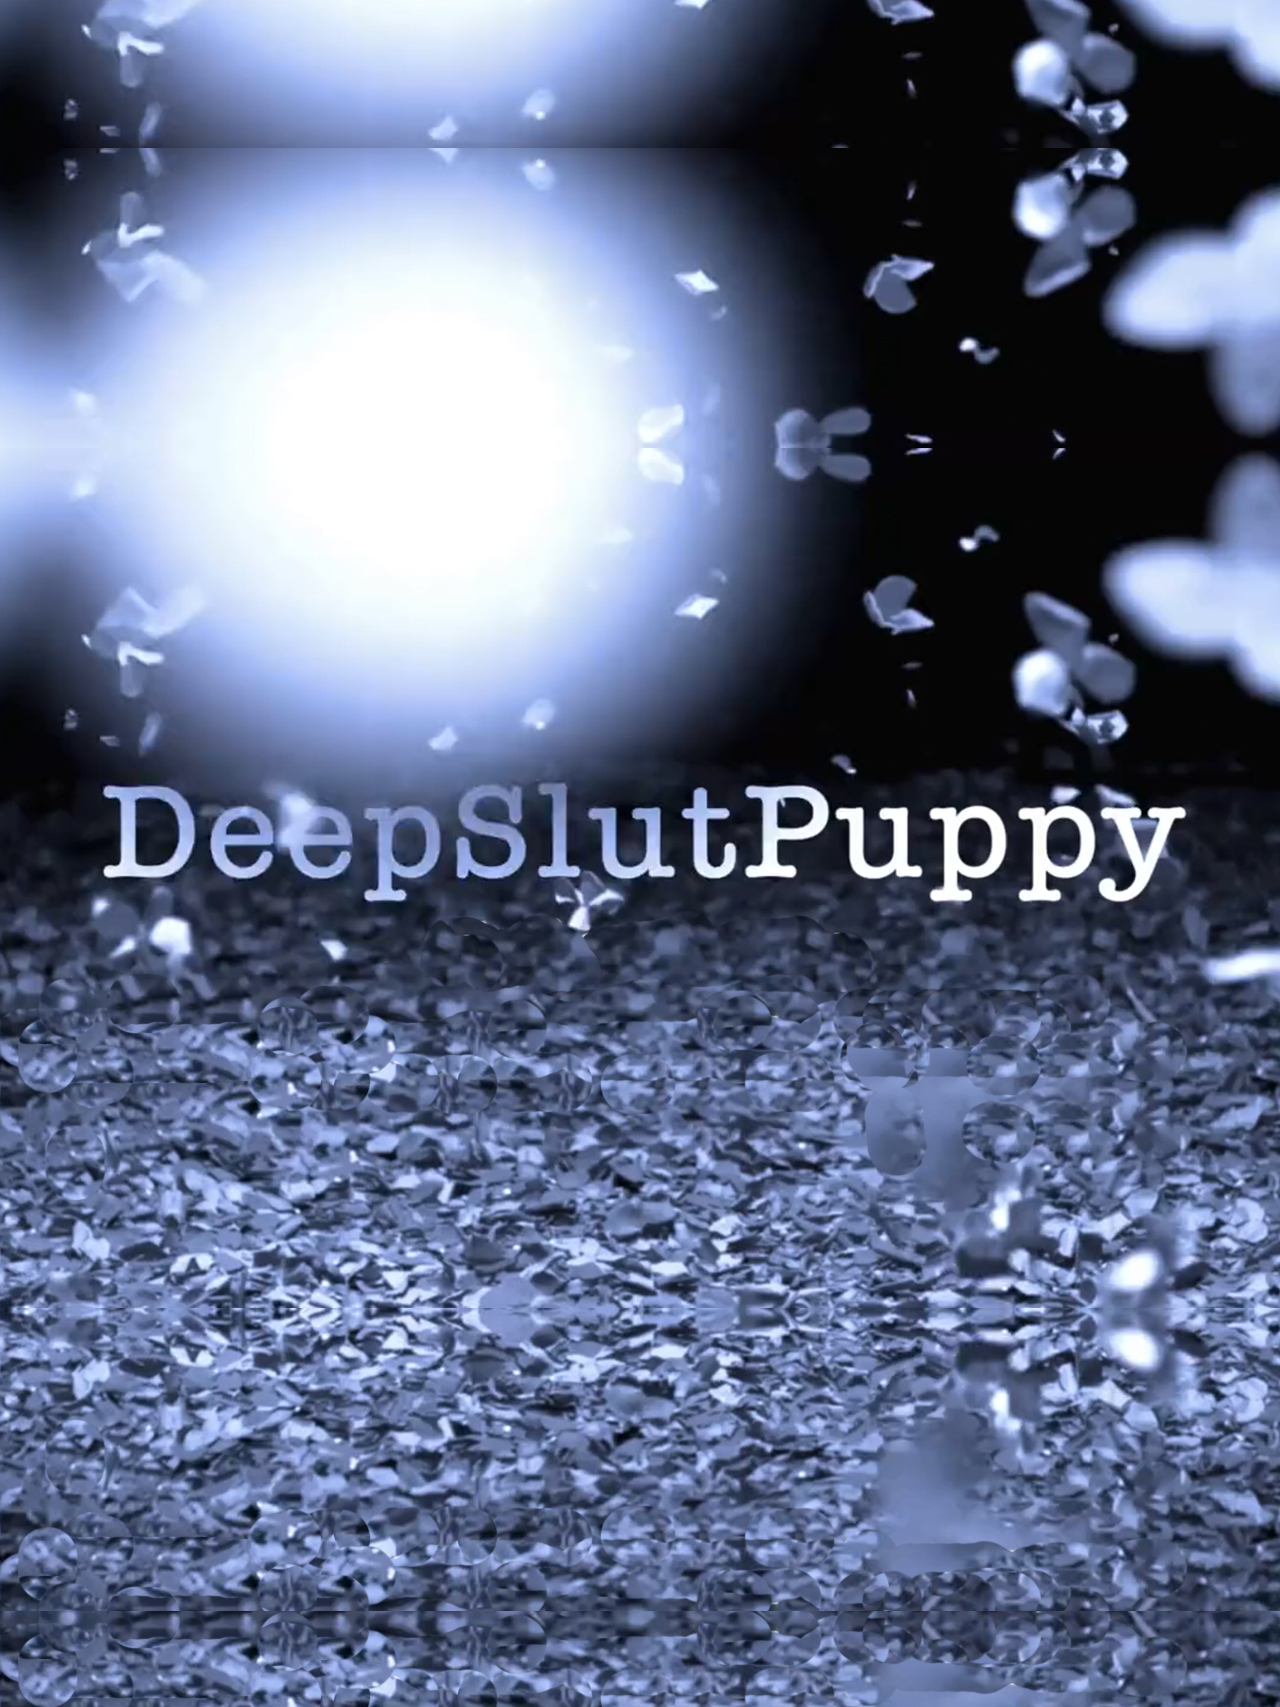 DeepSlutPuppy